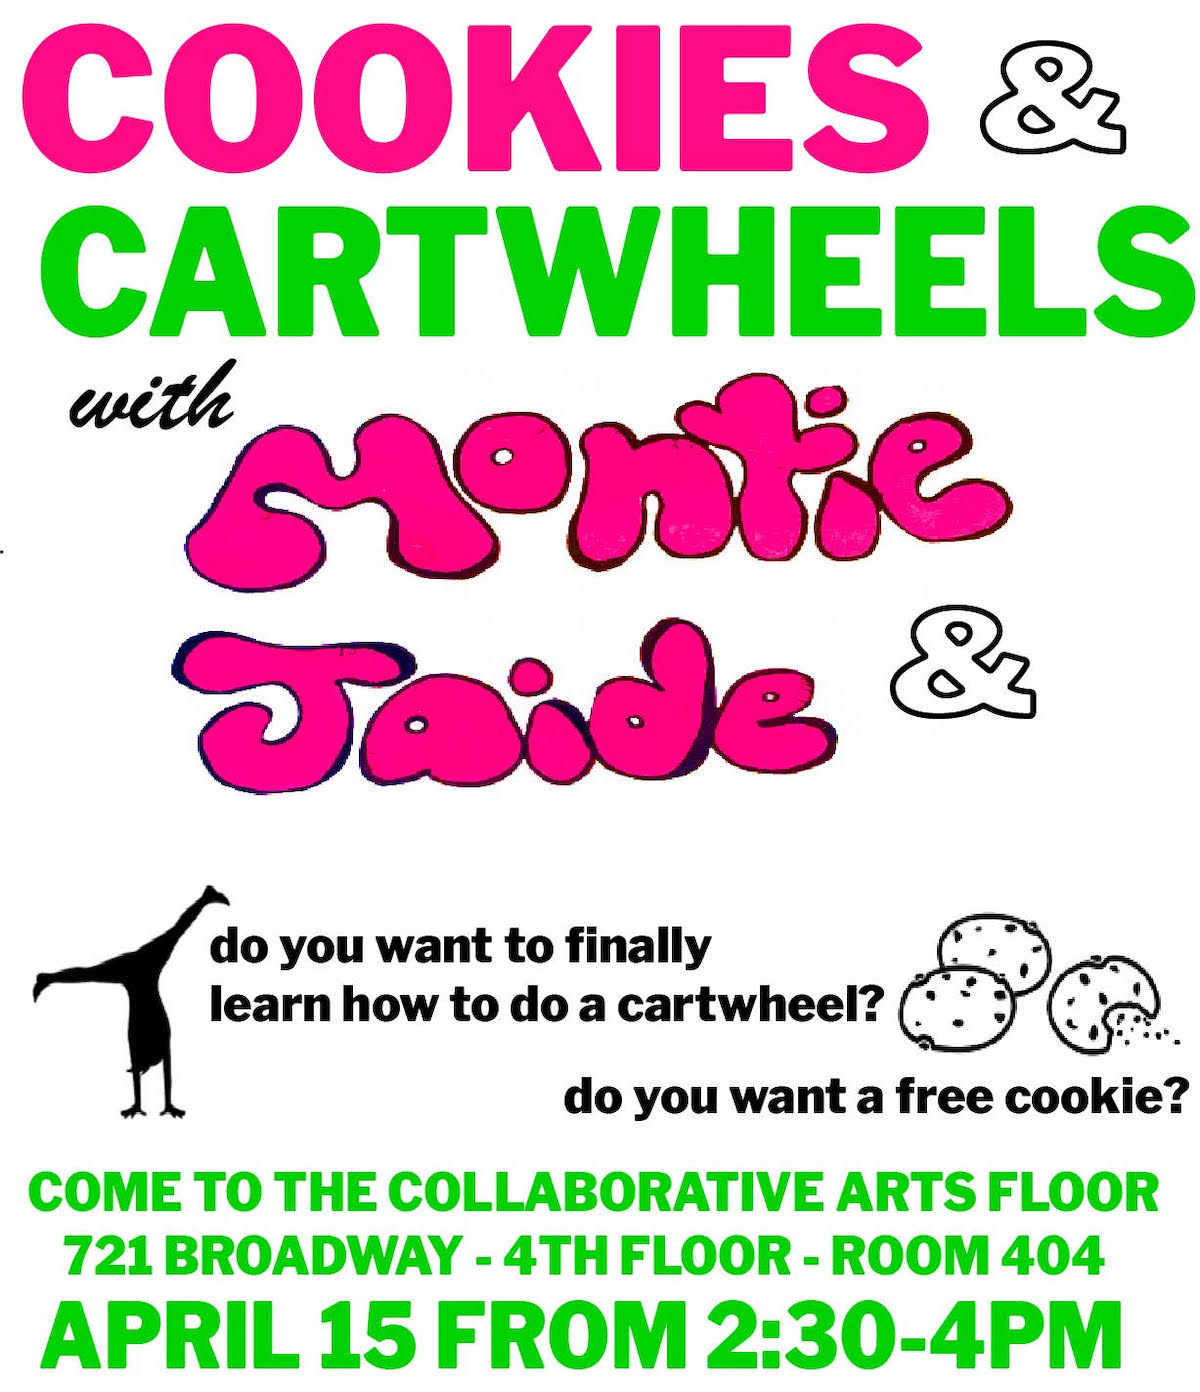 Cookies & Cartwheels flyer